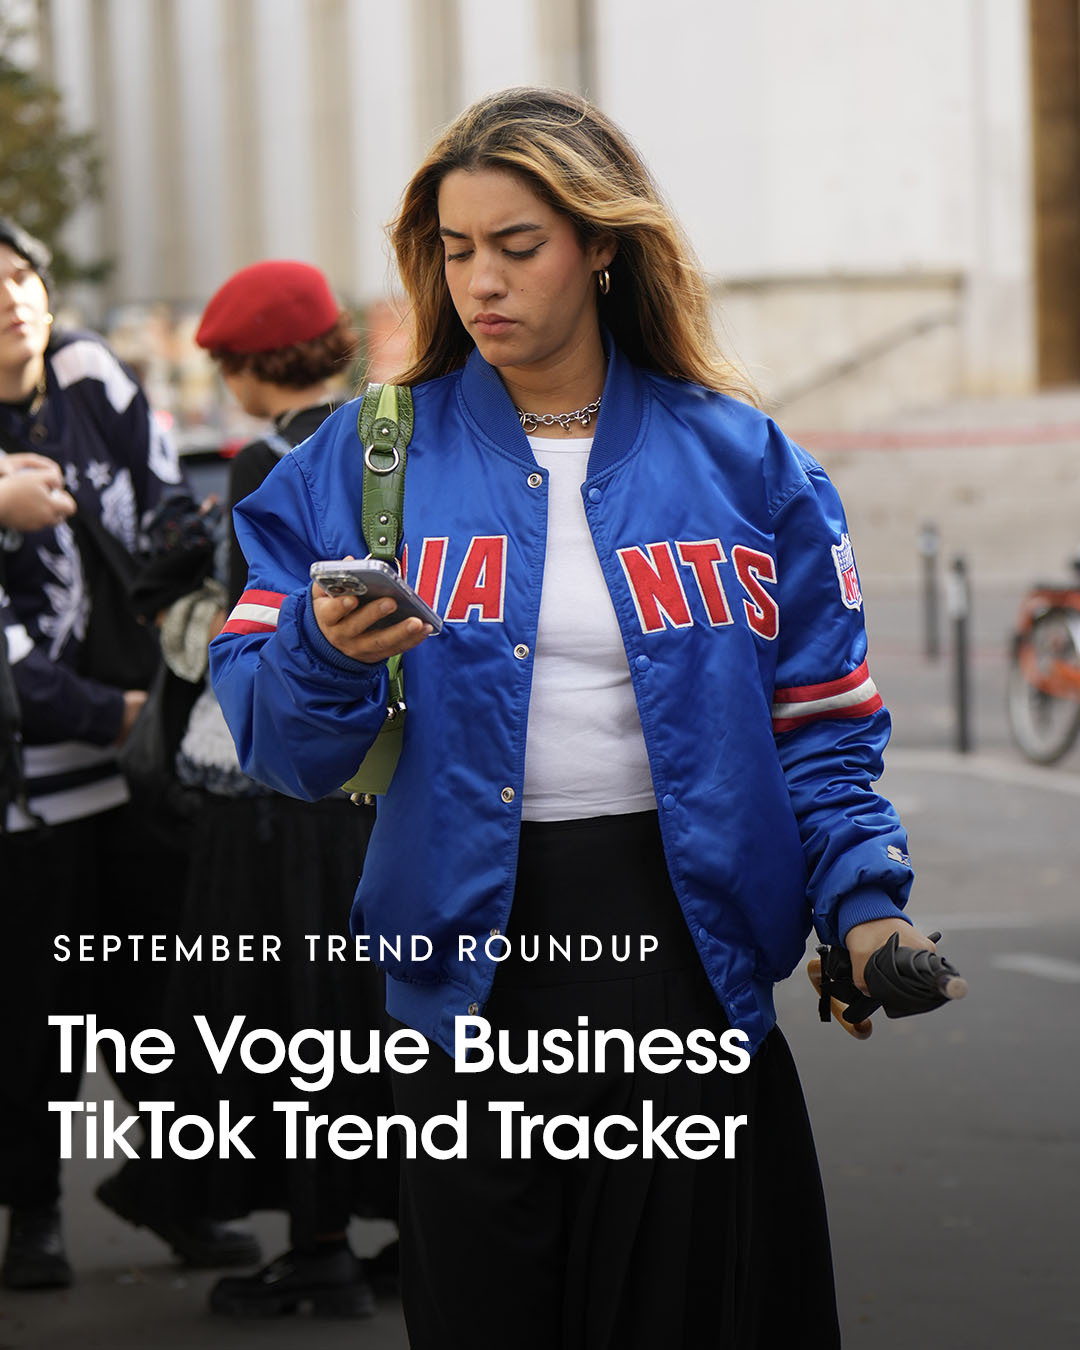 The Vogue Business TikTok Trend Tracker